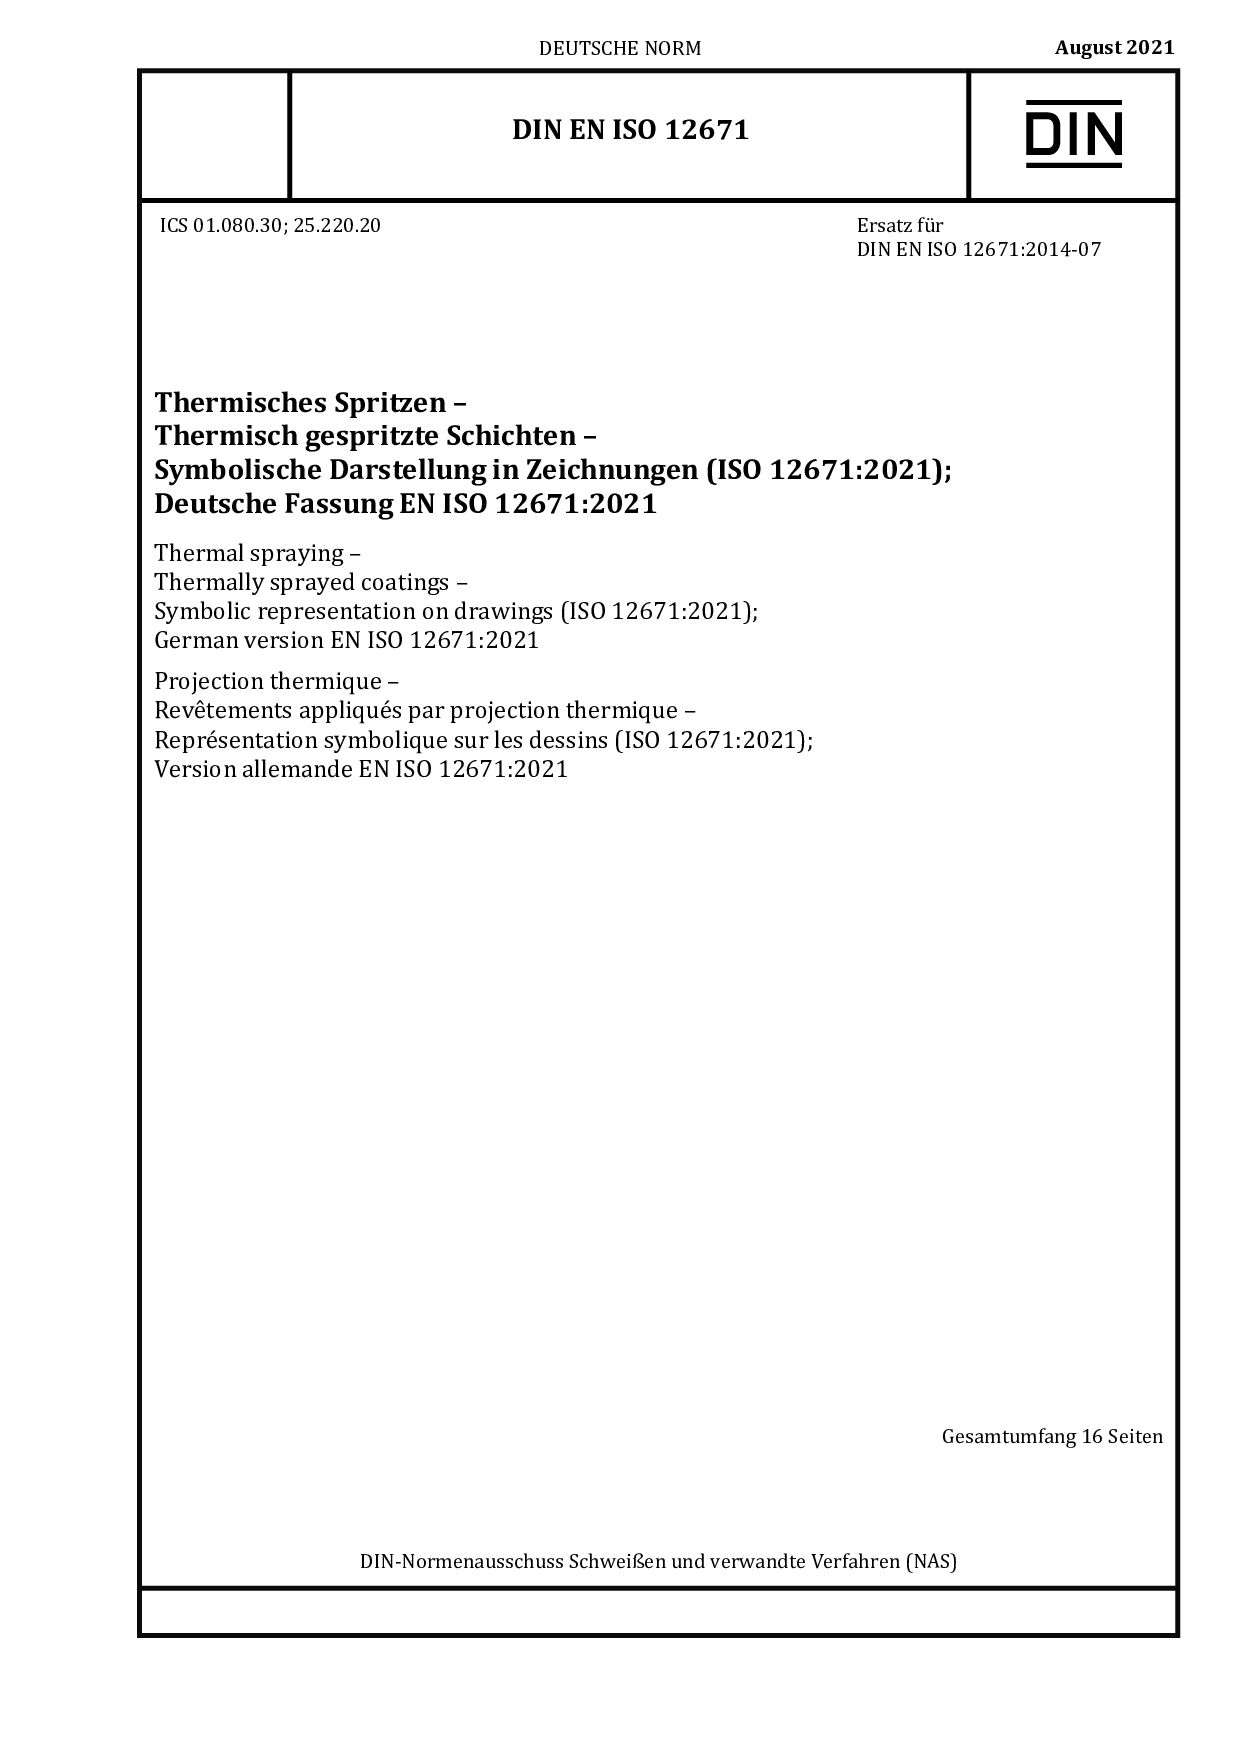 DIN EN ISO 12671:2021-08